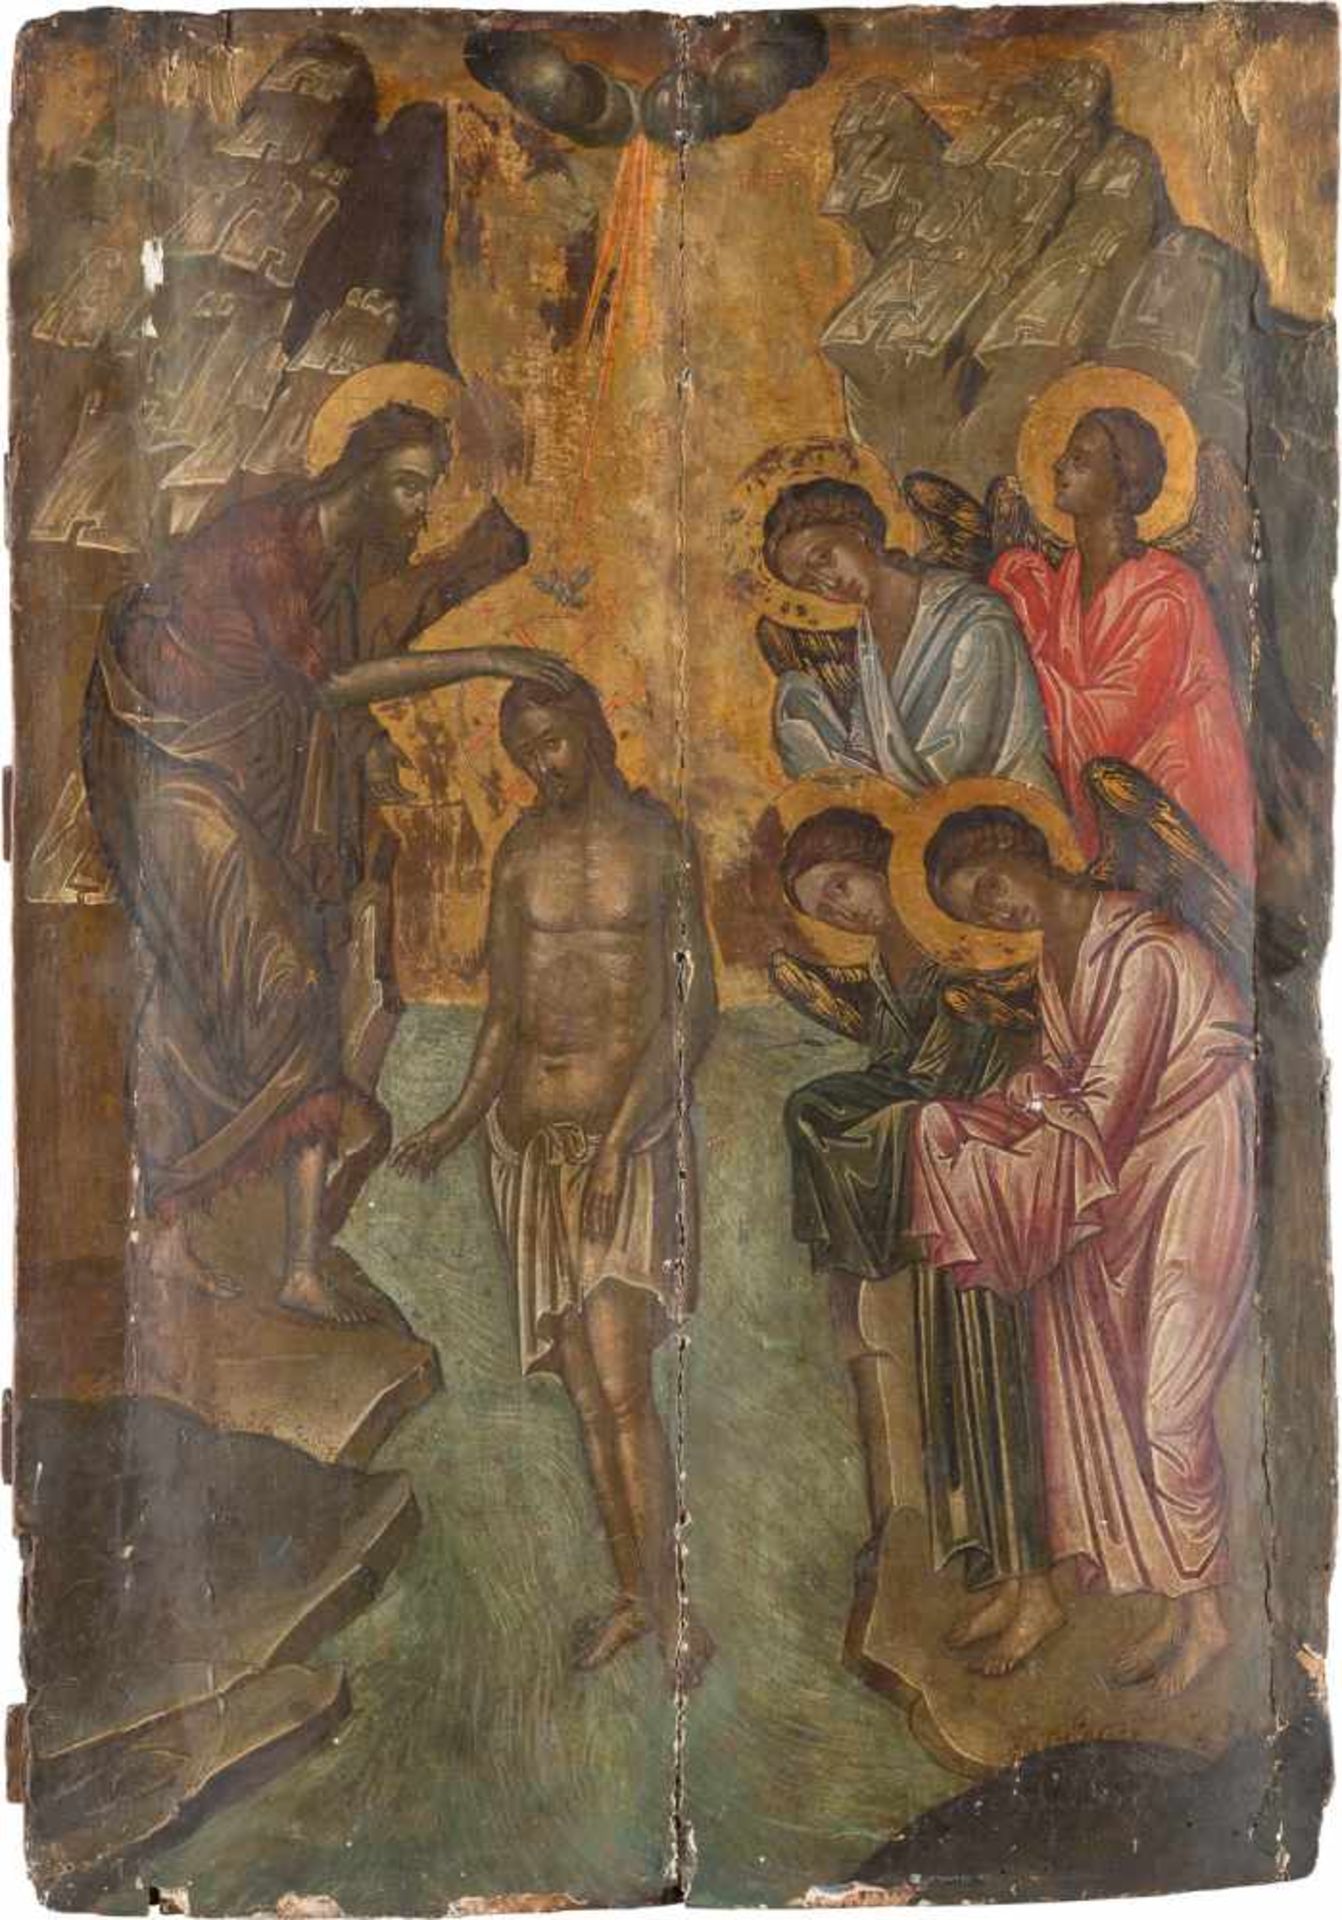 GROSSFORMATIGE IKONE MIT DER TAUFE CHRISTI Griechenland, Kreta, um 1500 Holztafel, rückseitig